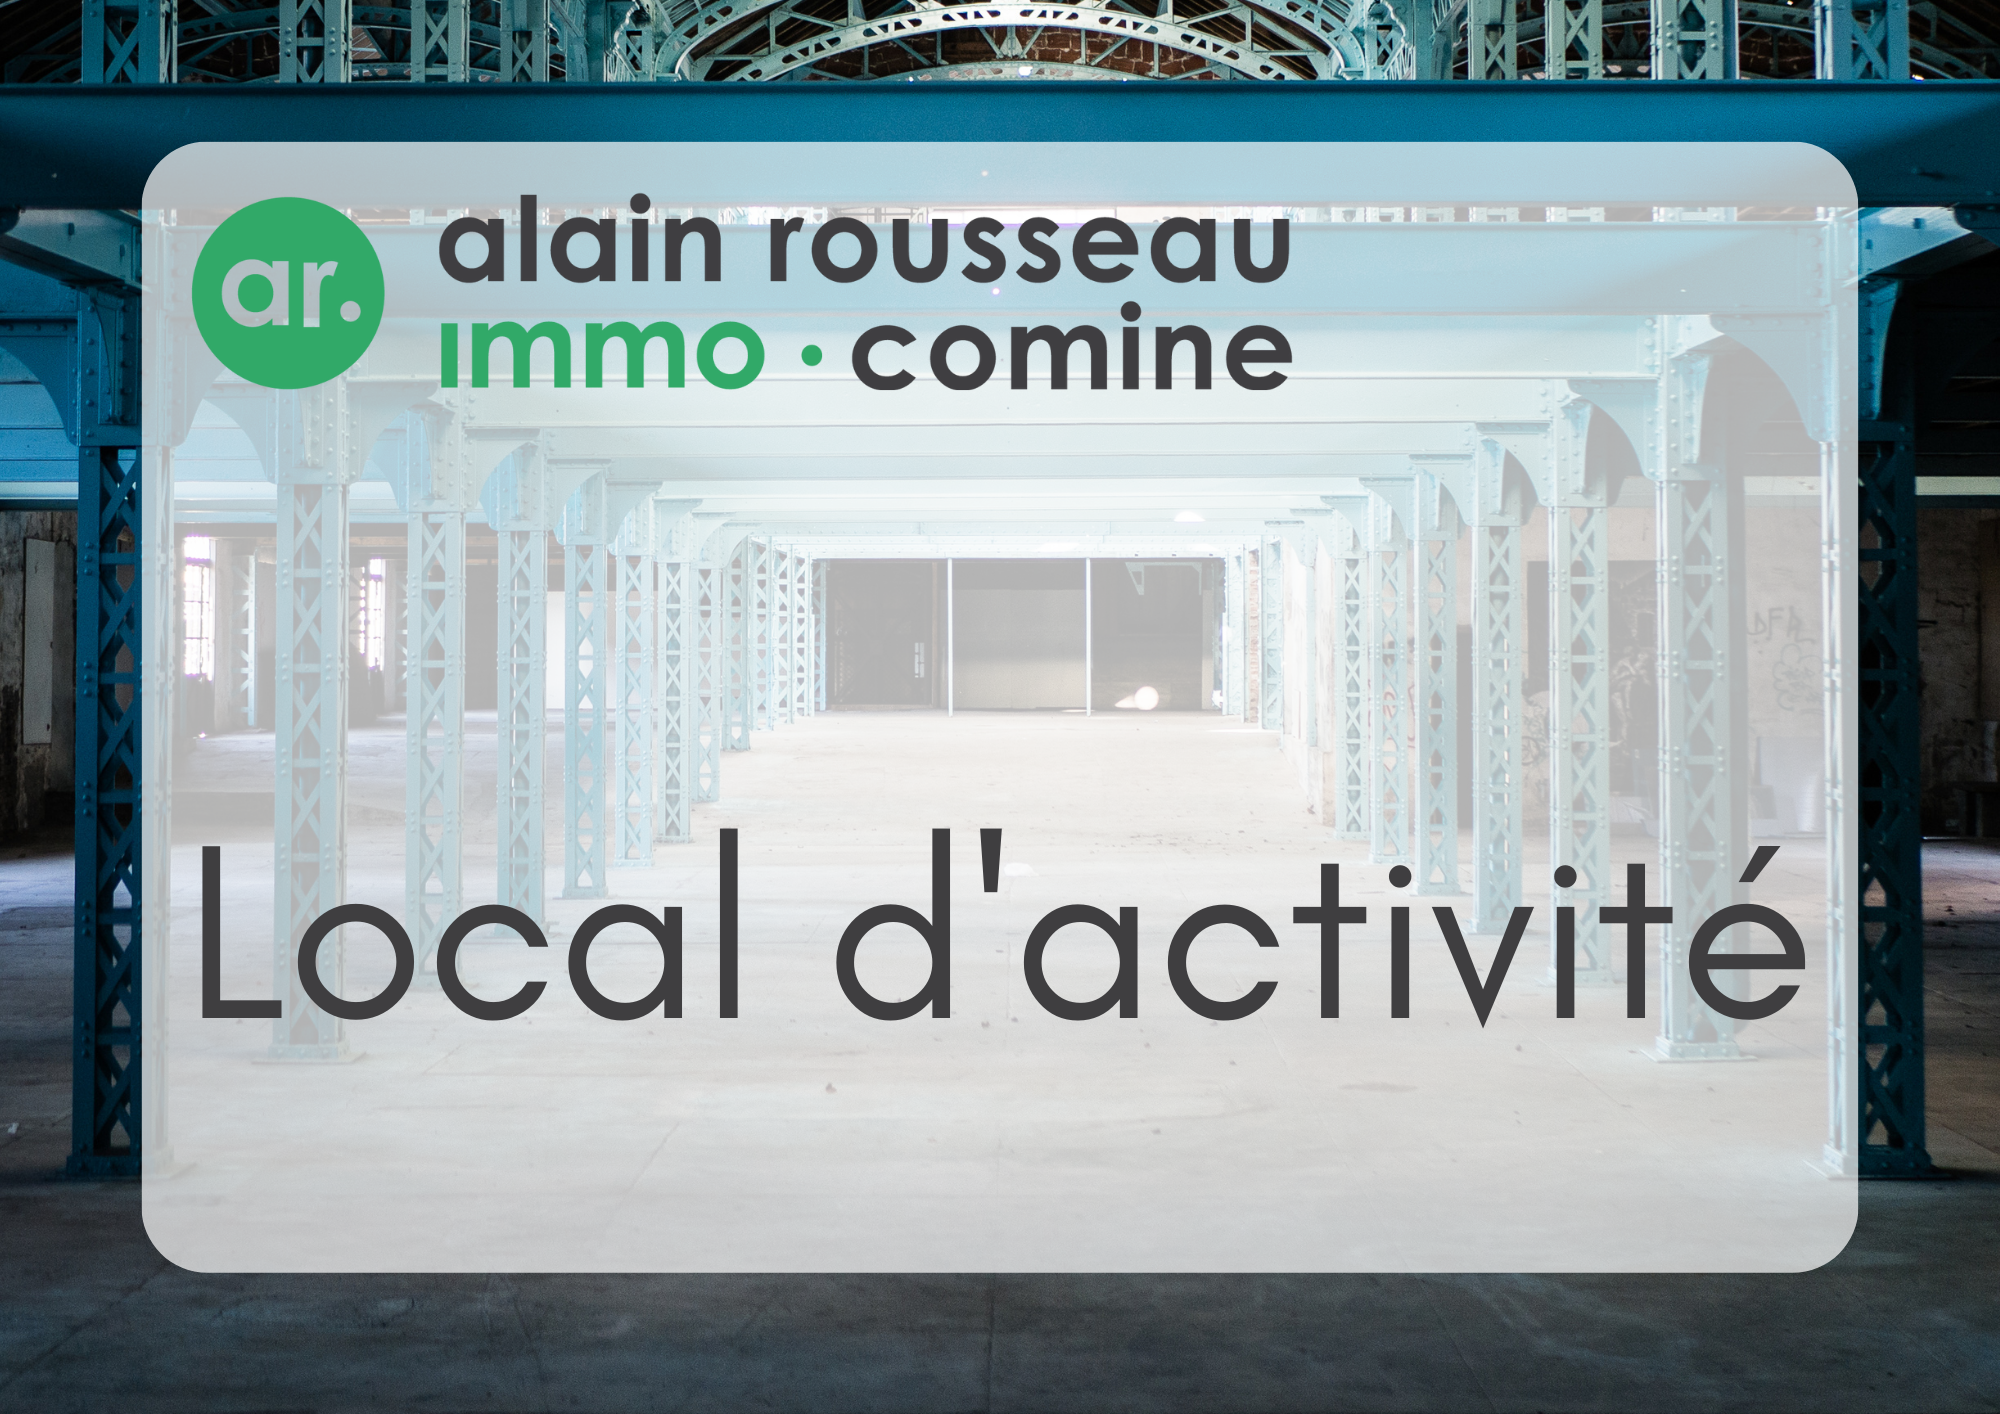 Vente local activité 1000m² stationnements Angers